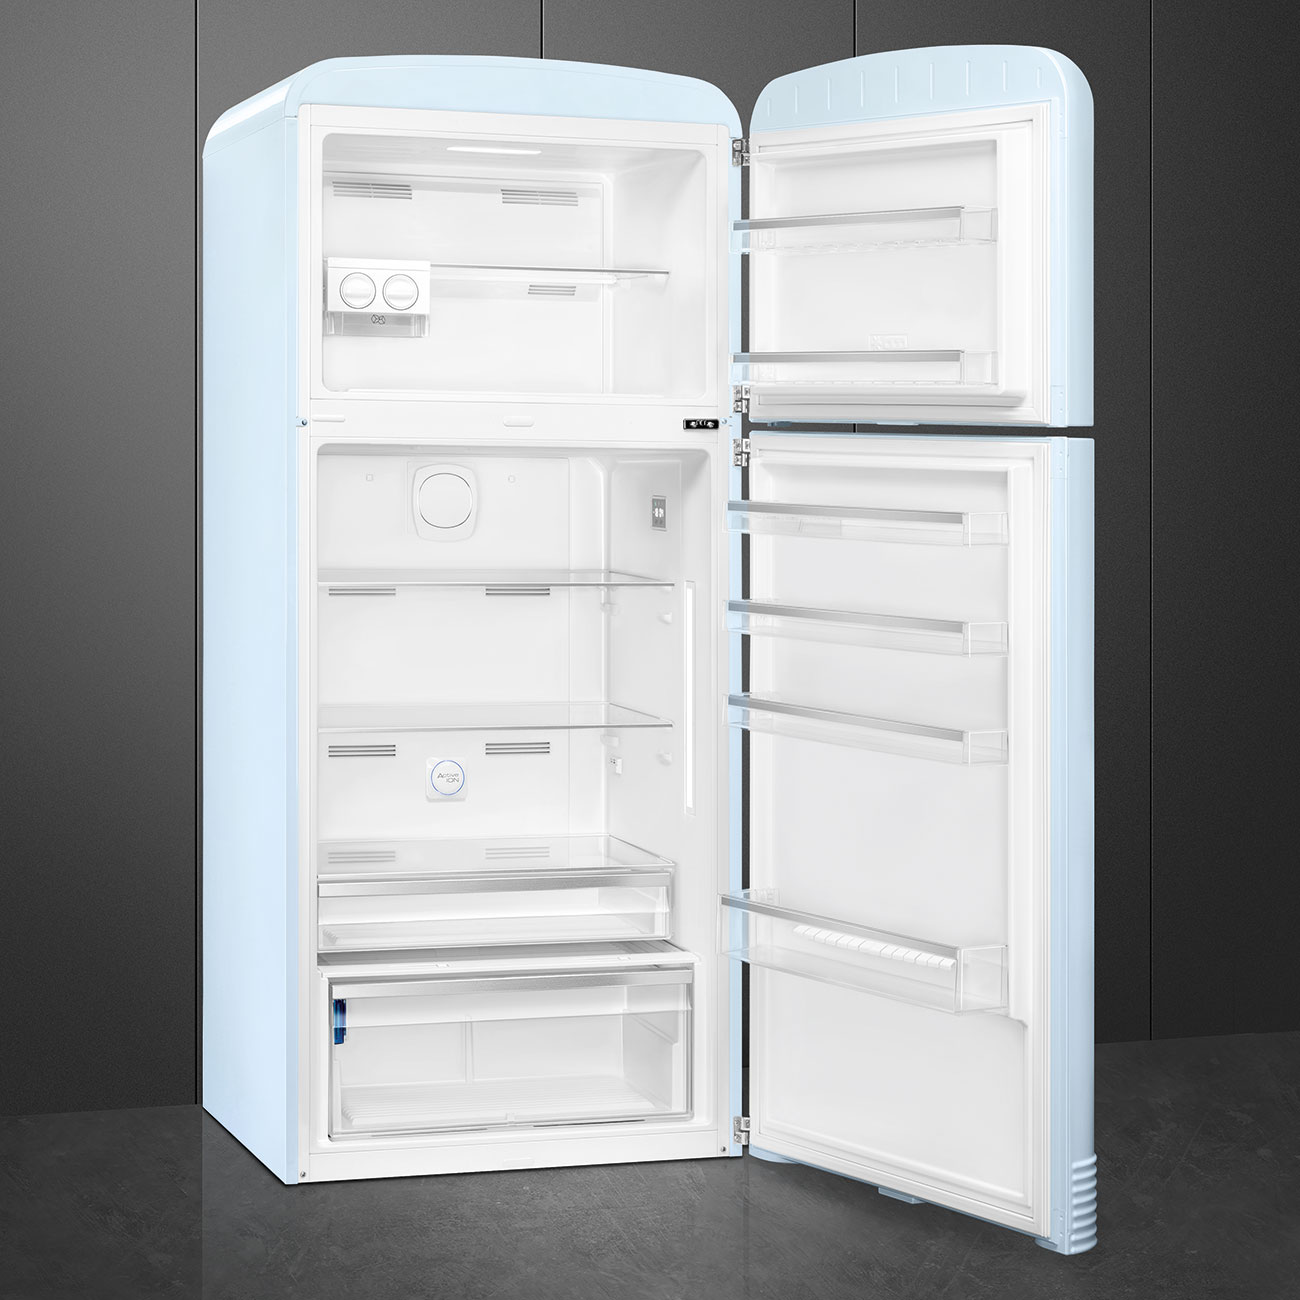 Pastel blue refrigerator - Smeg_5